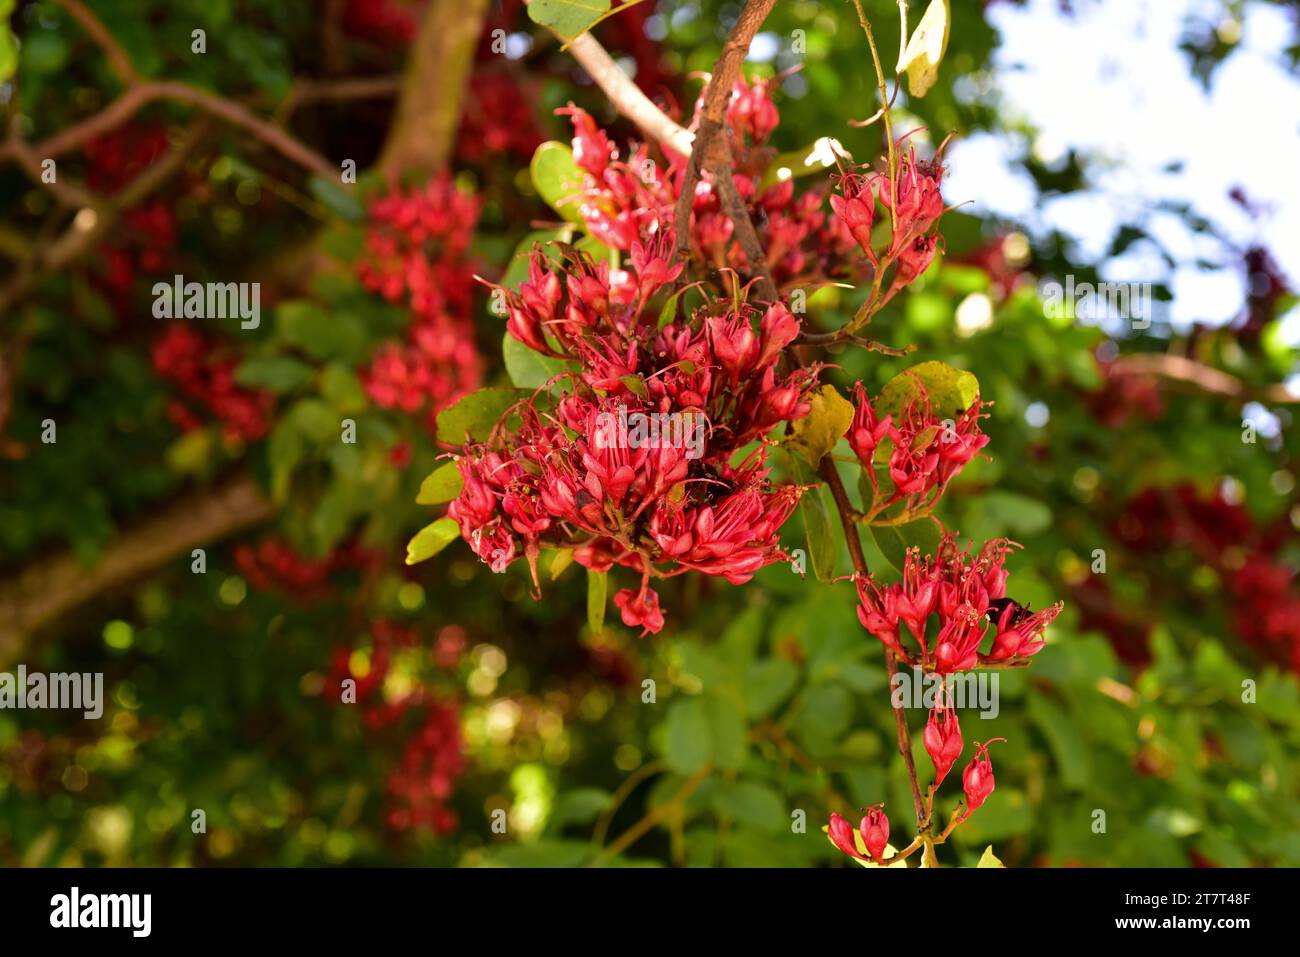 Die weinende bohne (Schotia brachypetala oder Schotia latifolia) ist ein Laubbaum, der im südlichen Afrika beheimatet ist. Blumendetail. Stockfoto